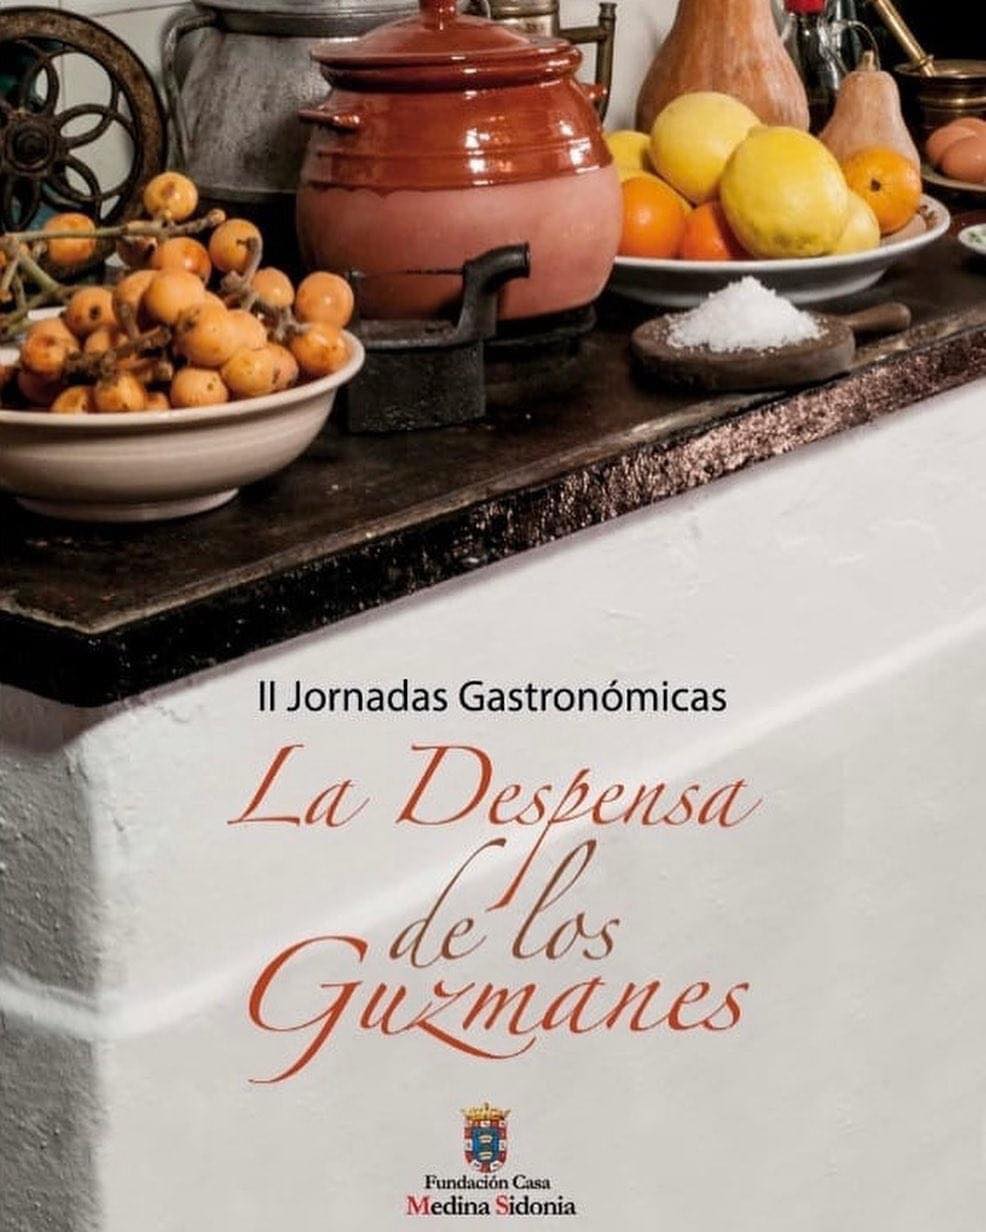 II Jornadas Gastronomicas 'La Despensa de los Guzmanes' 2022 en Sanlúcar